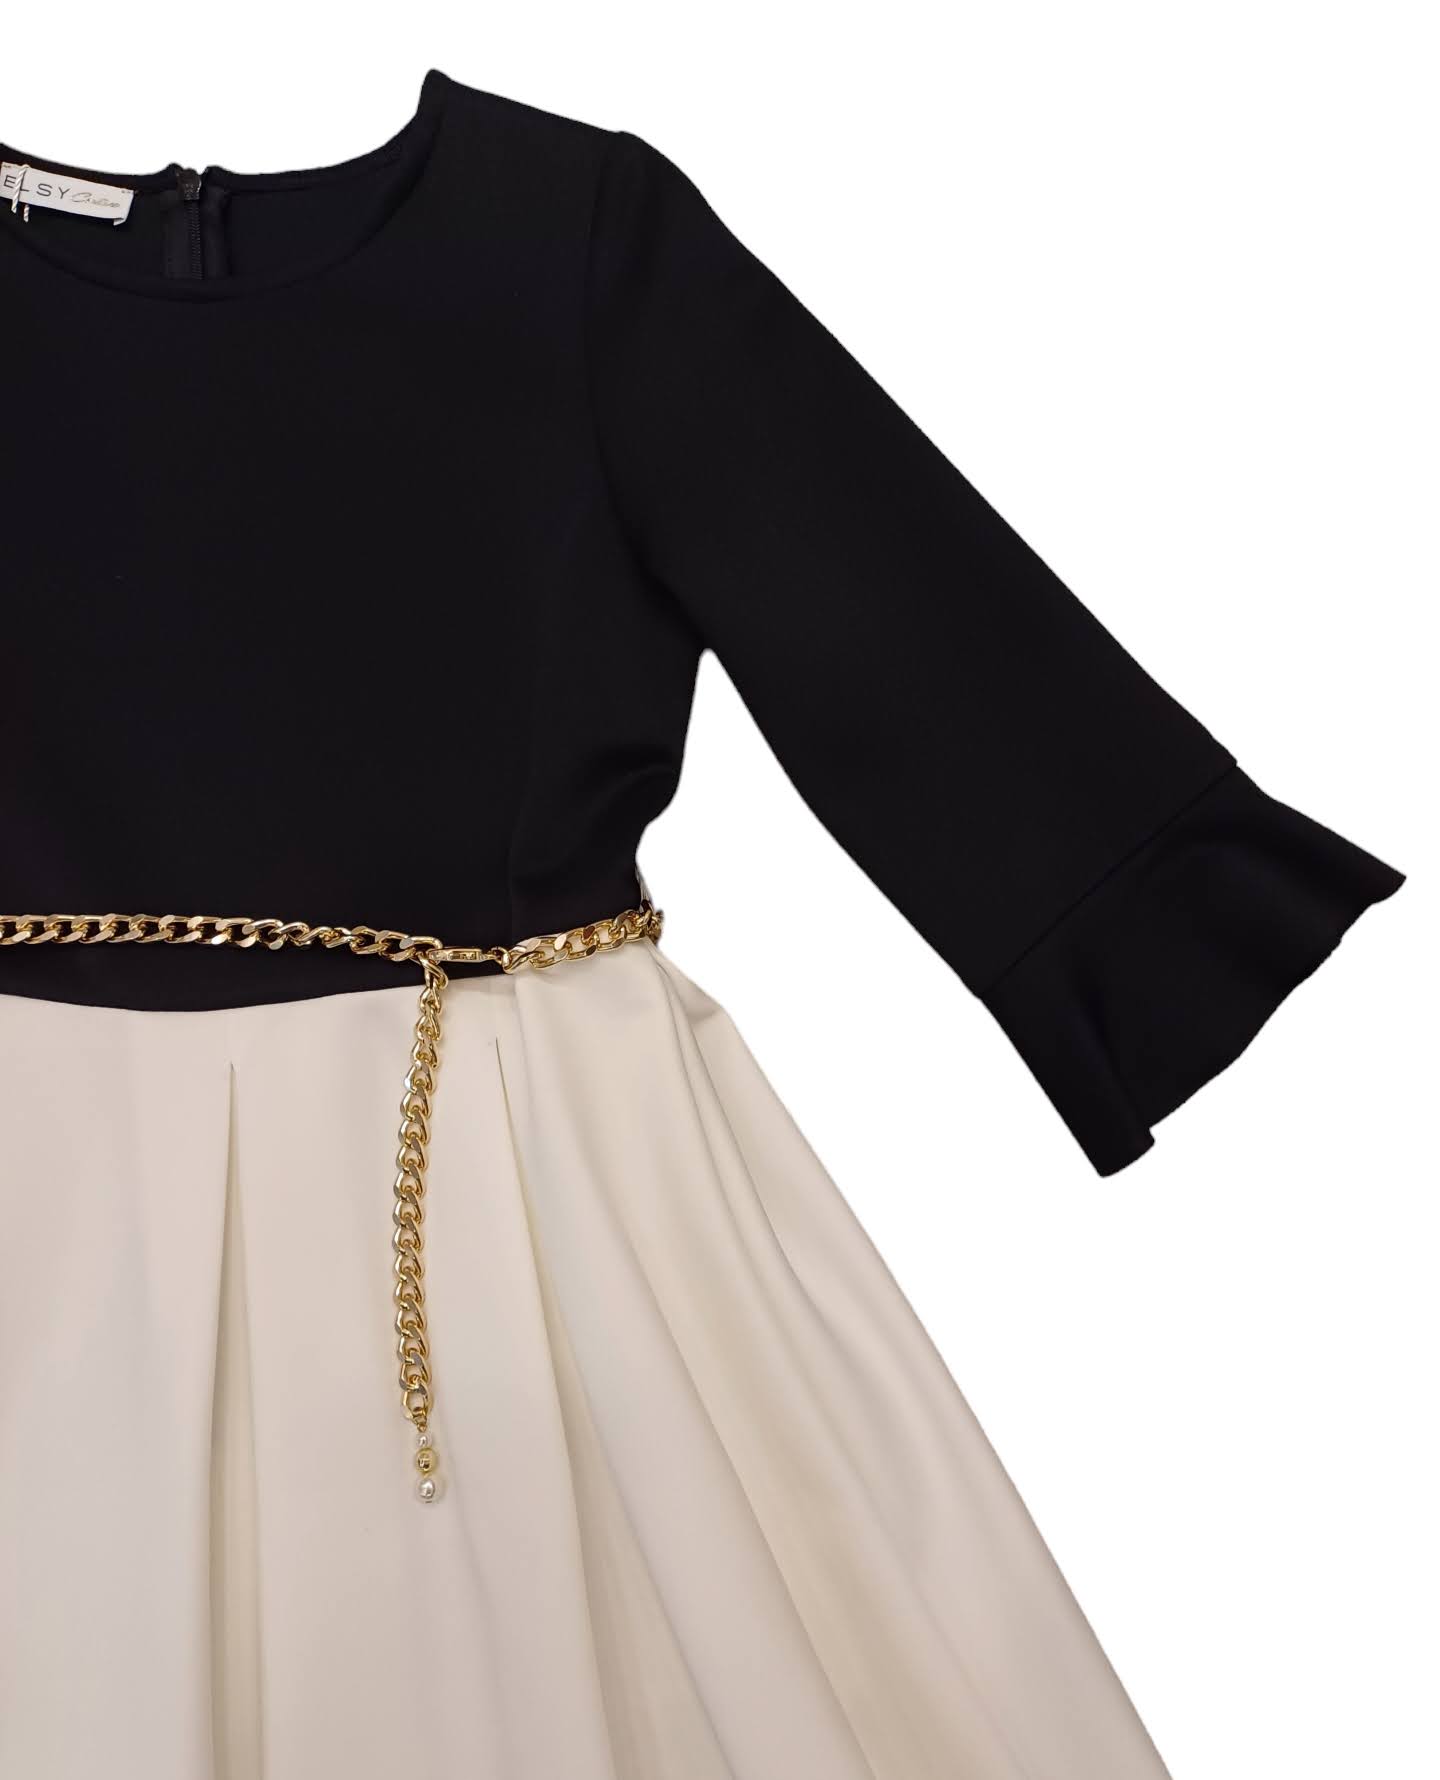 ELSY Couture Vestito Nero-Yogurt con cinturino oro